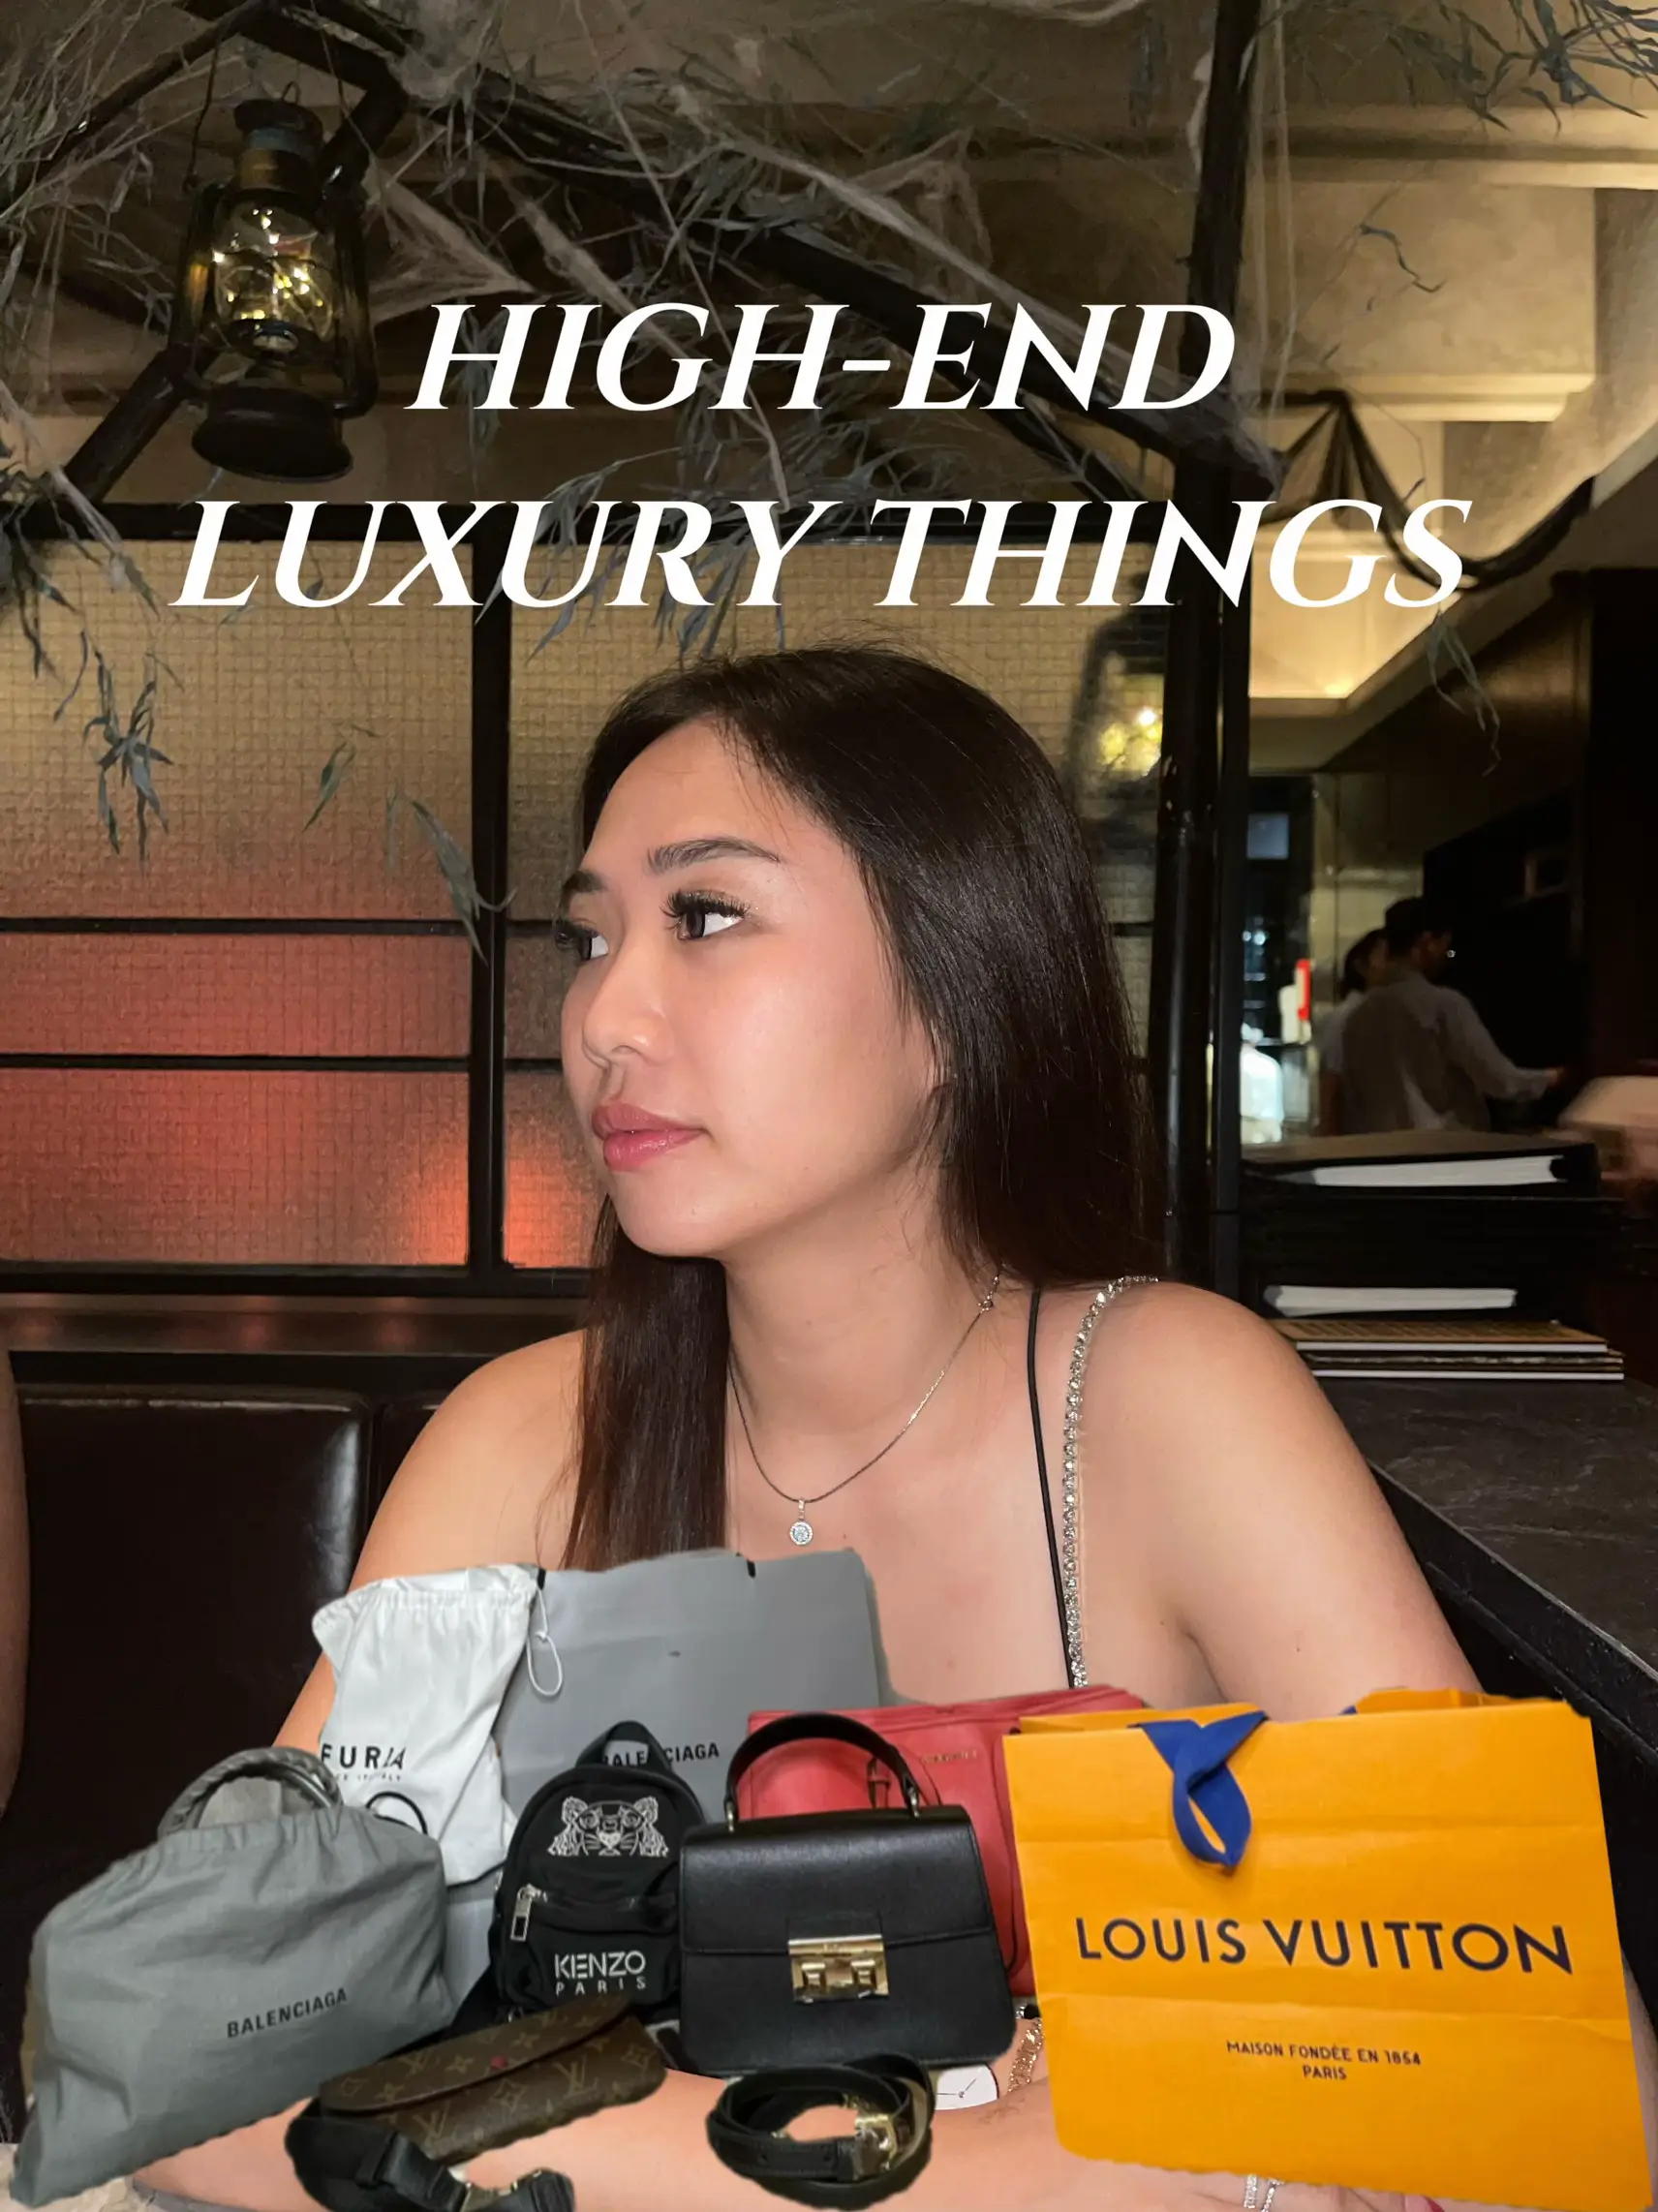 LV Neonoe in Caramel, Luxury, Bags & Wallets on Carousell